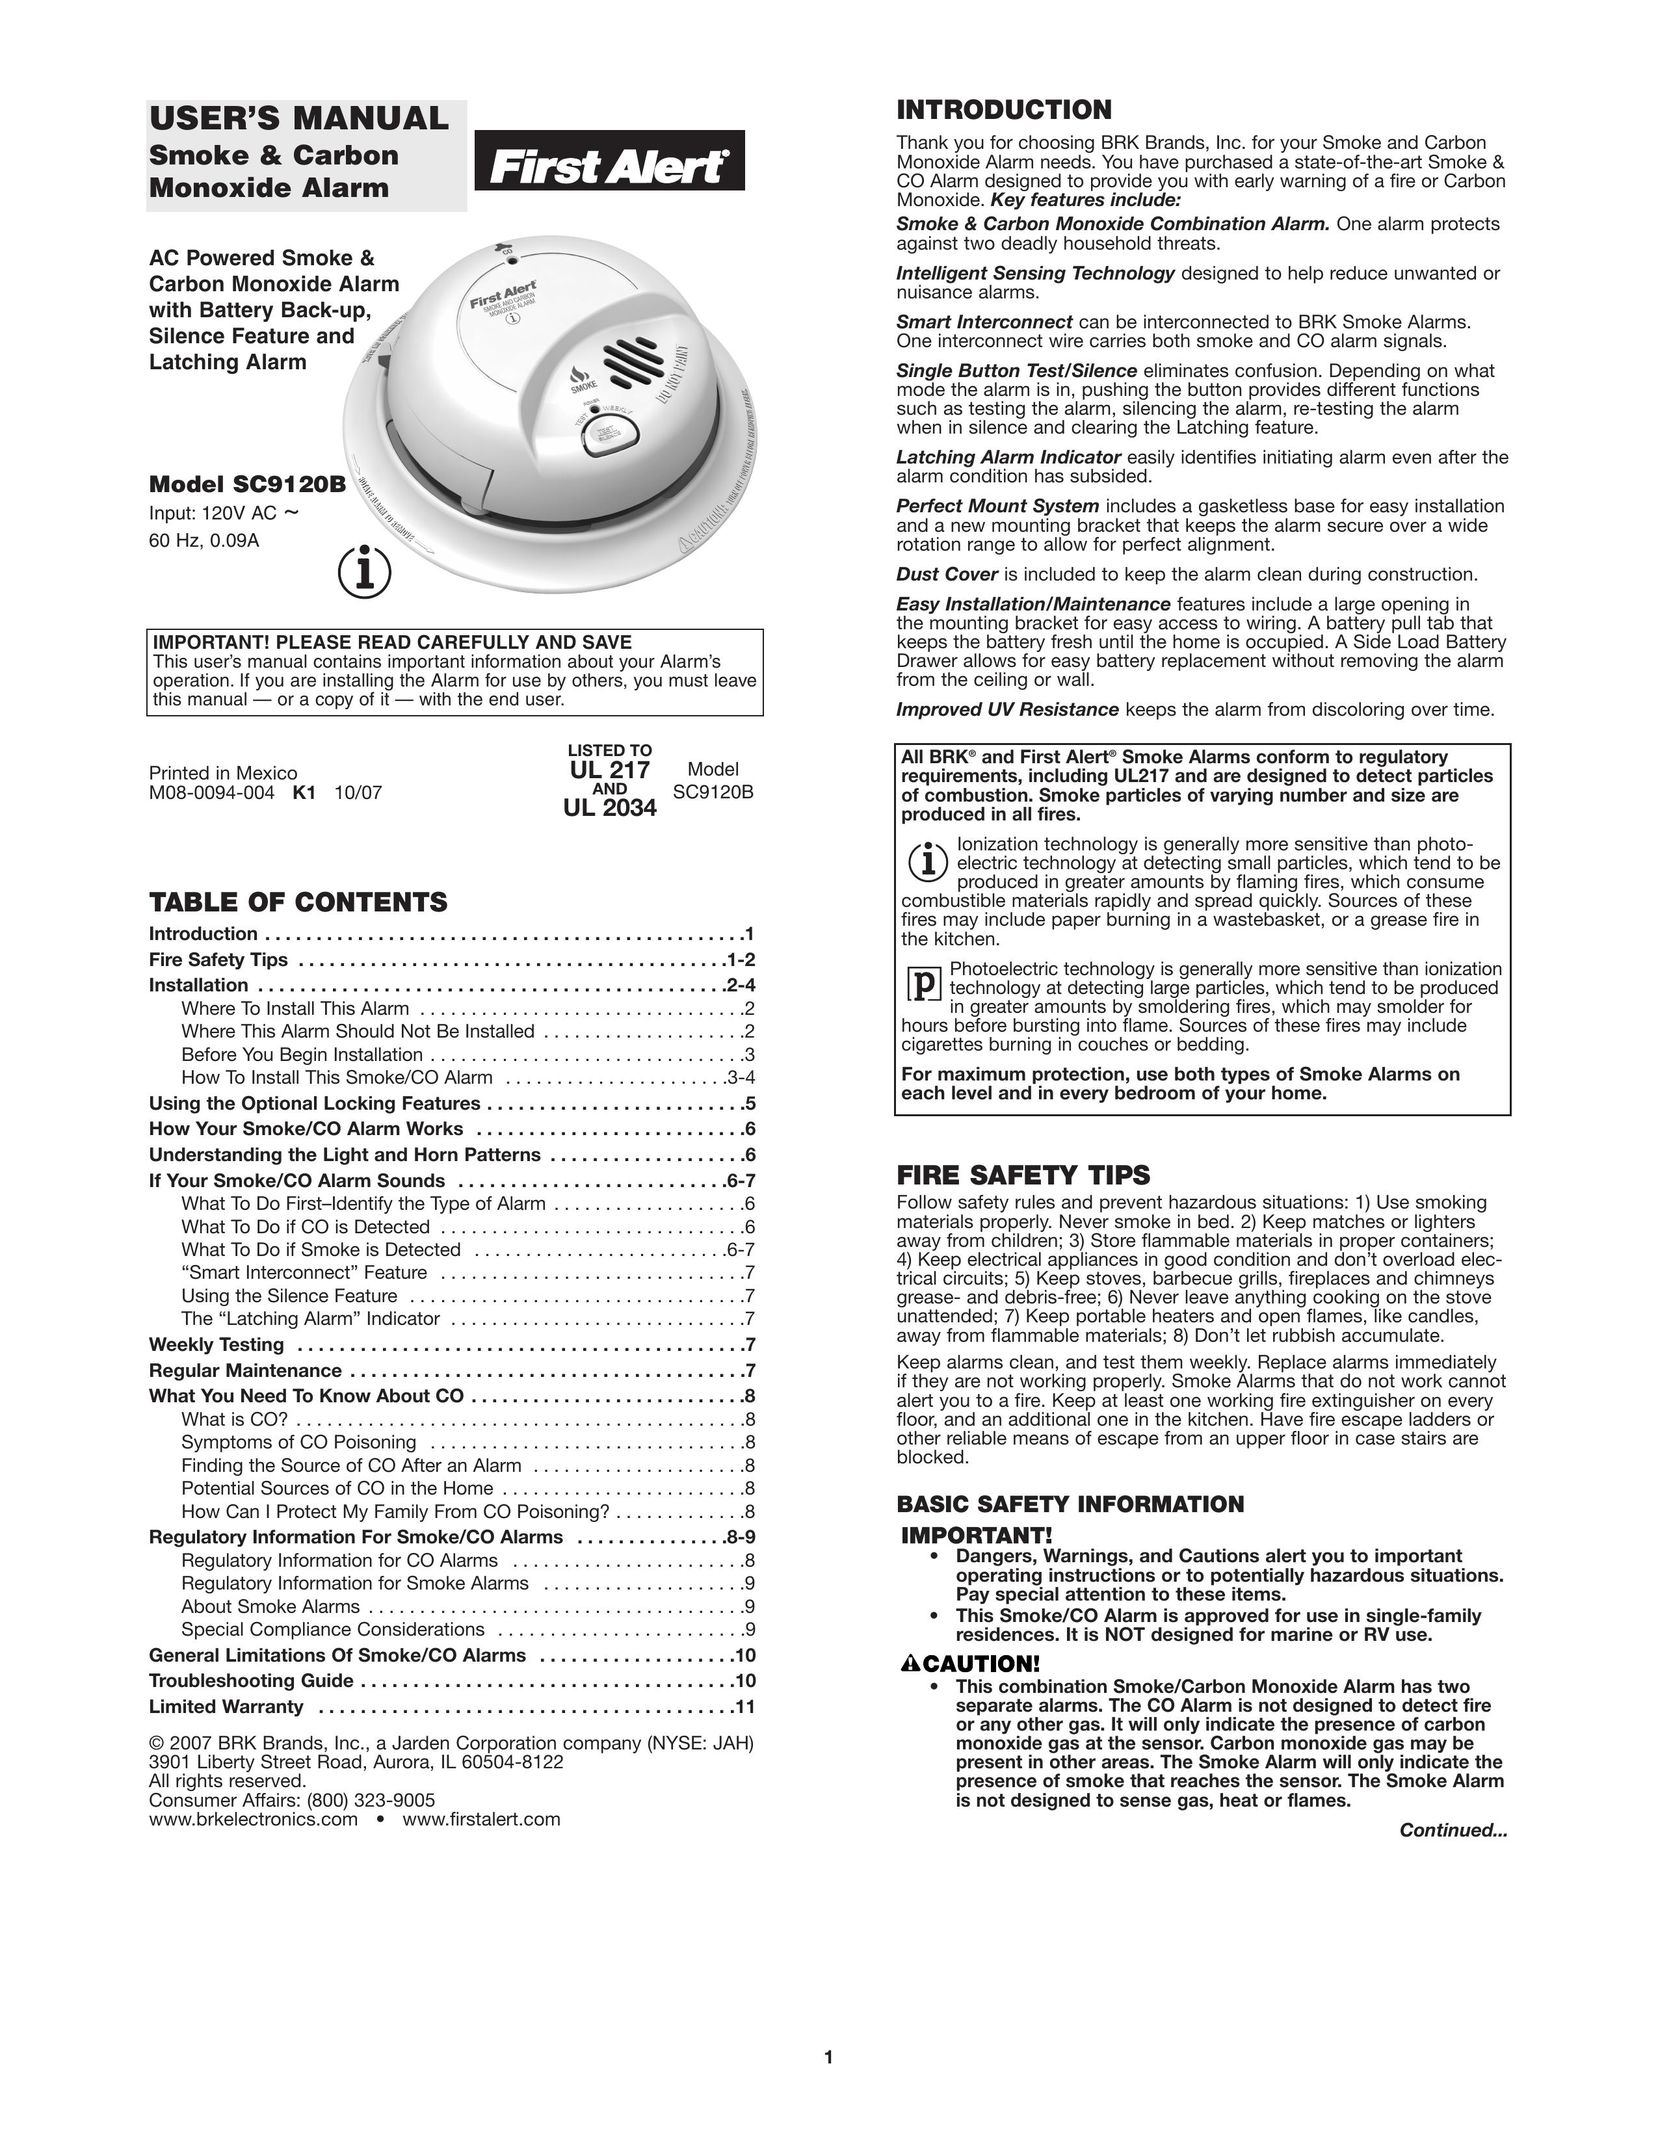 First Alert SC9120B Smoke Alarm User Manual